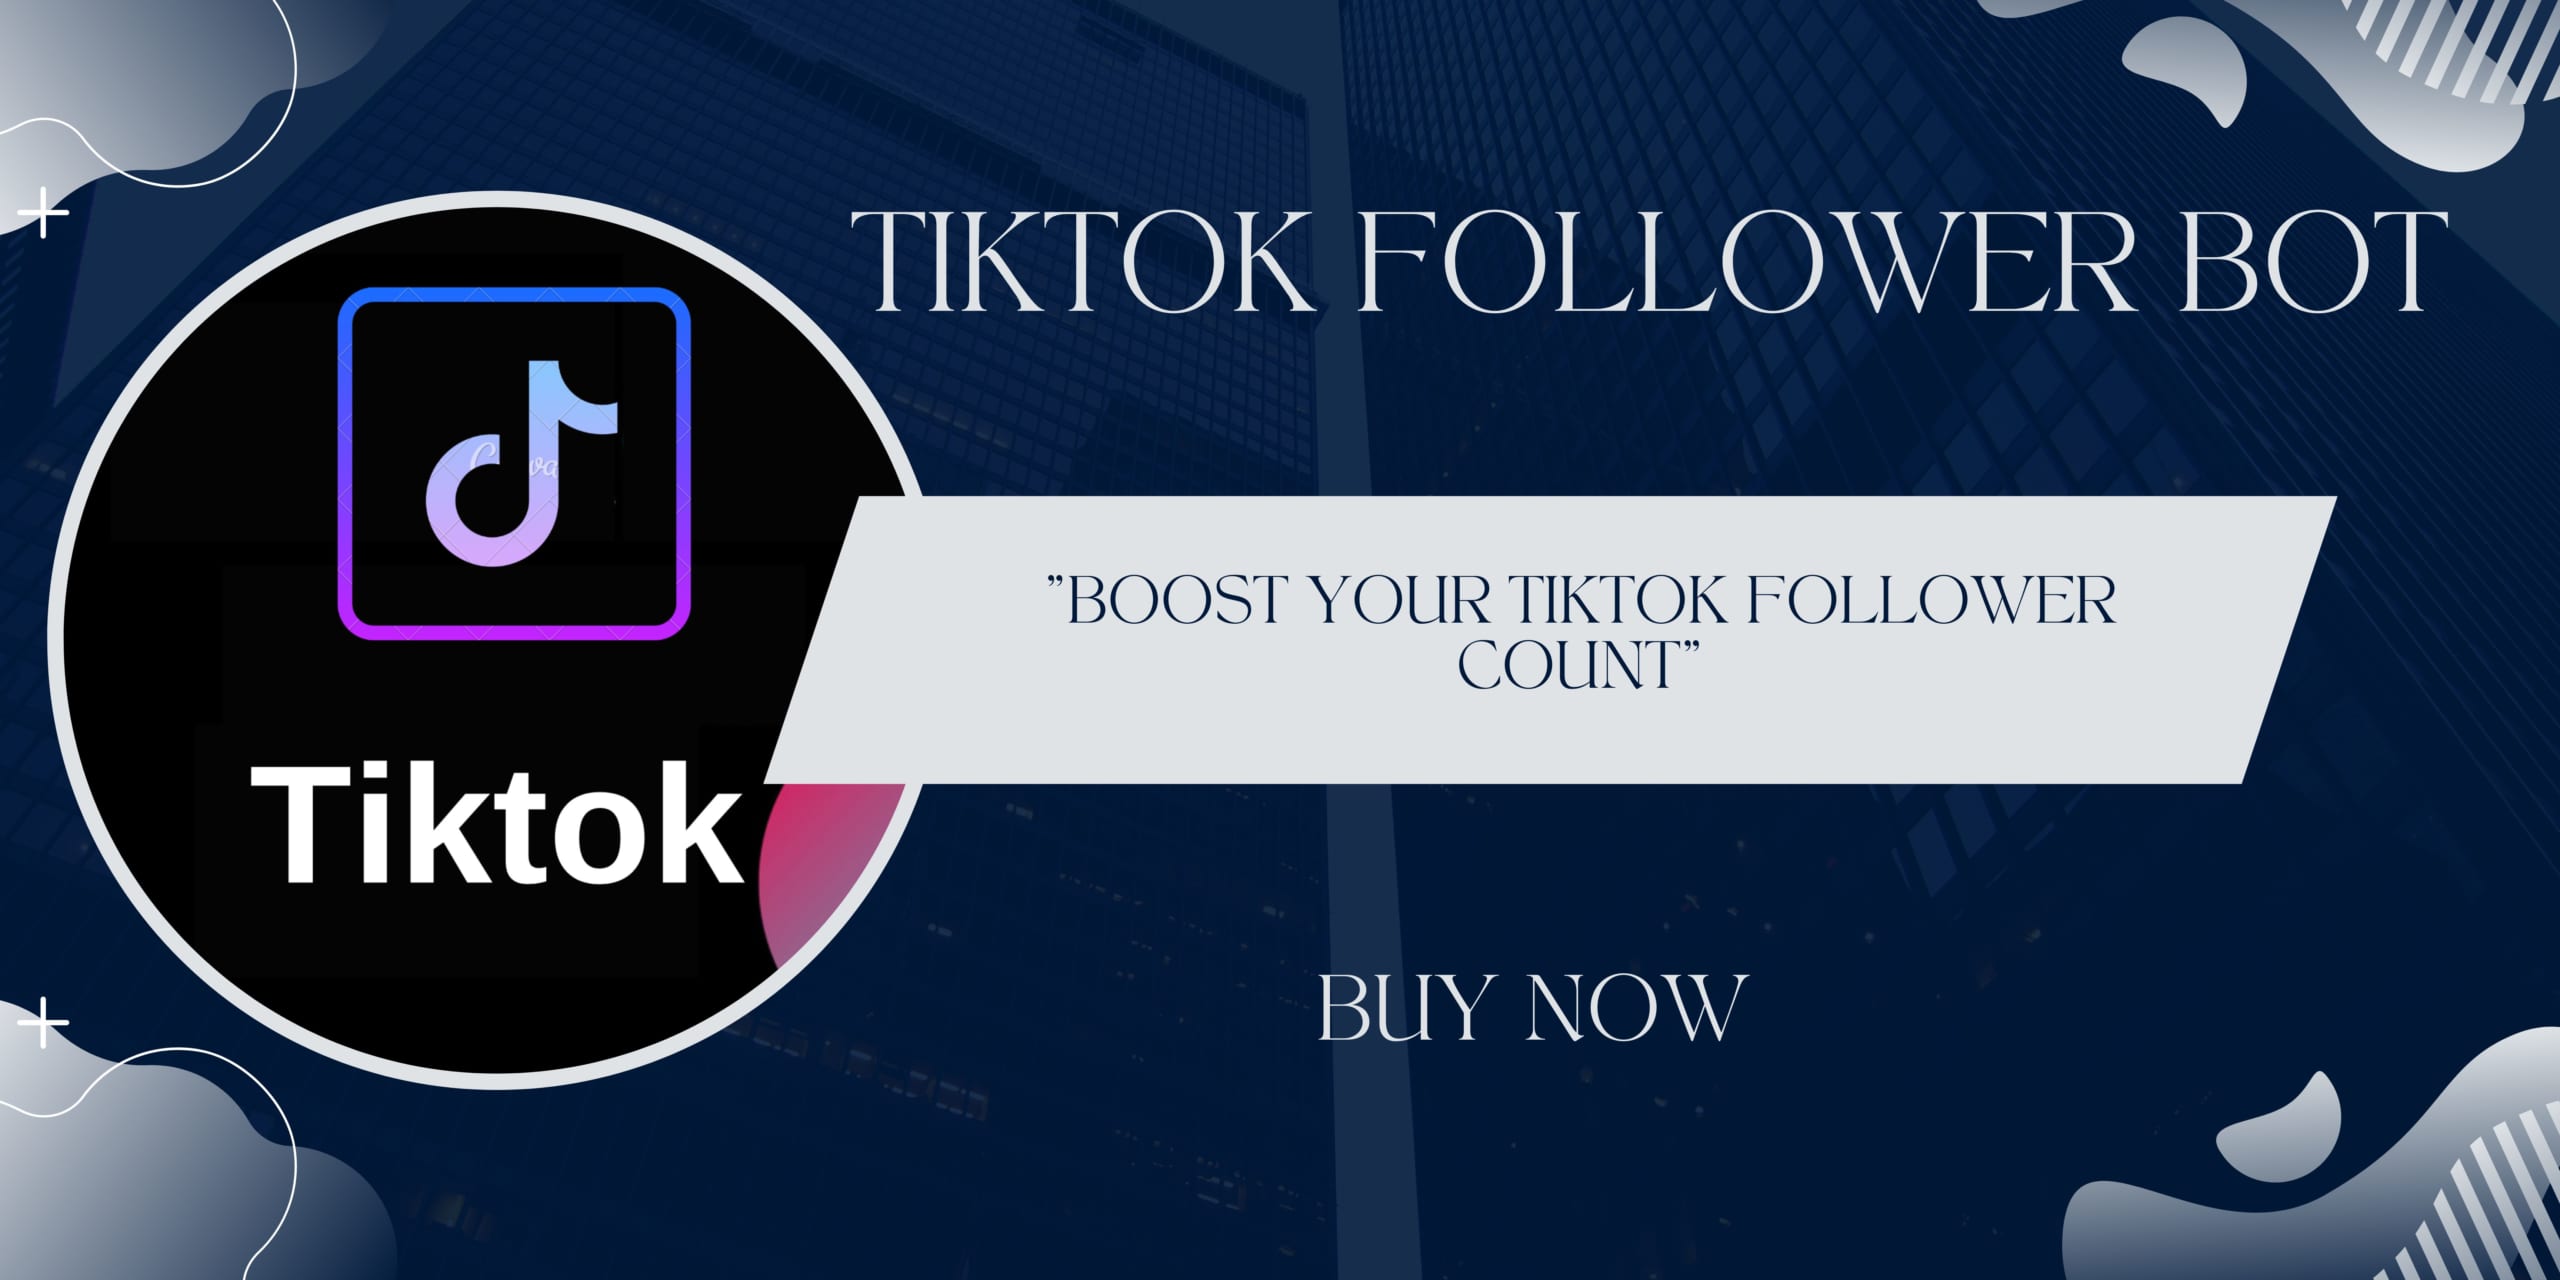 Boost Your TikTok Follower Count with TikTok Follower Bot!